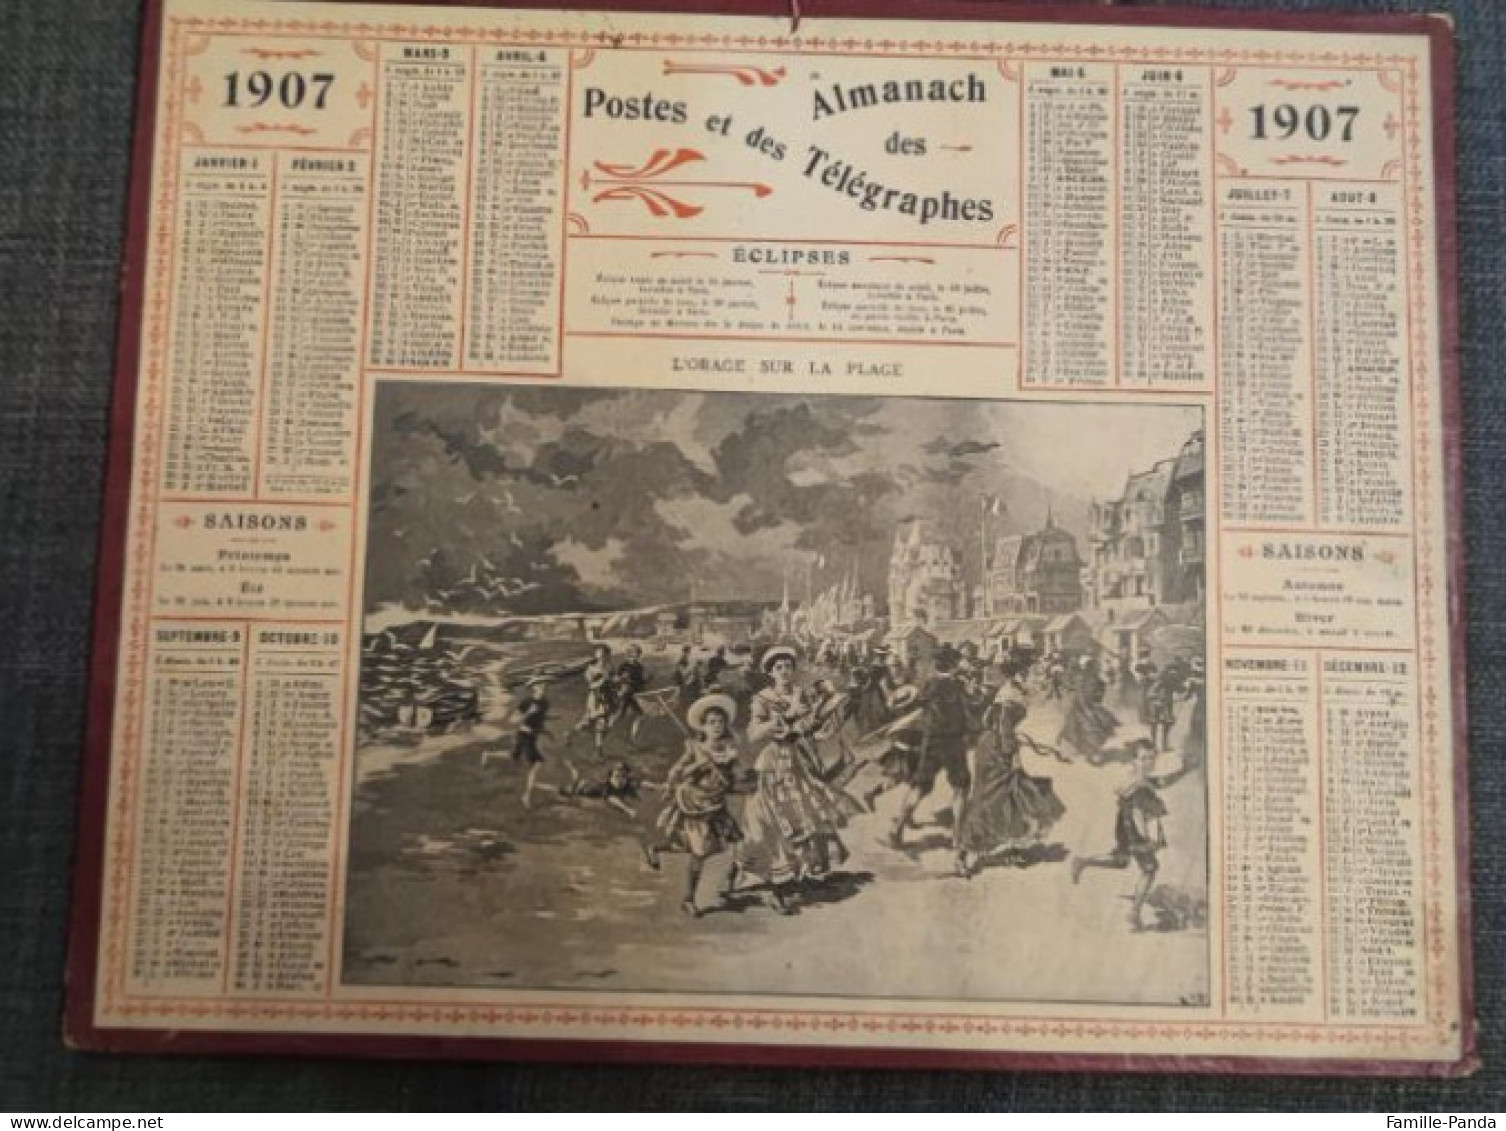 Calendrier PTT ALMANACH 1907 Des Postes Et Télégraphes 45 Loiret - L'orage Sur La Plage - Oberthur - Grossformat : 1901-20